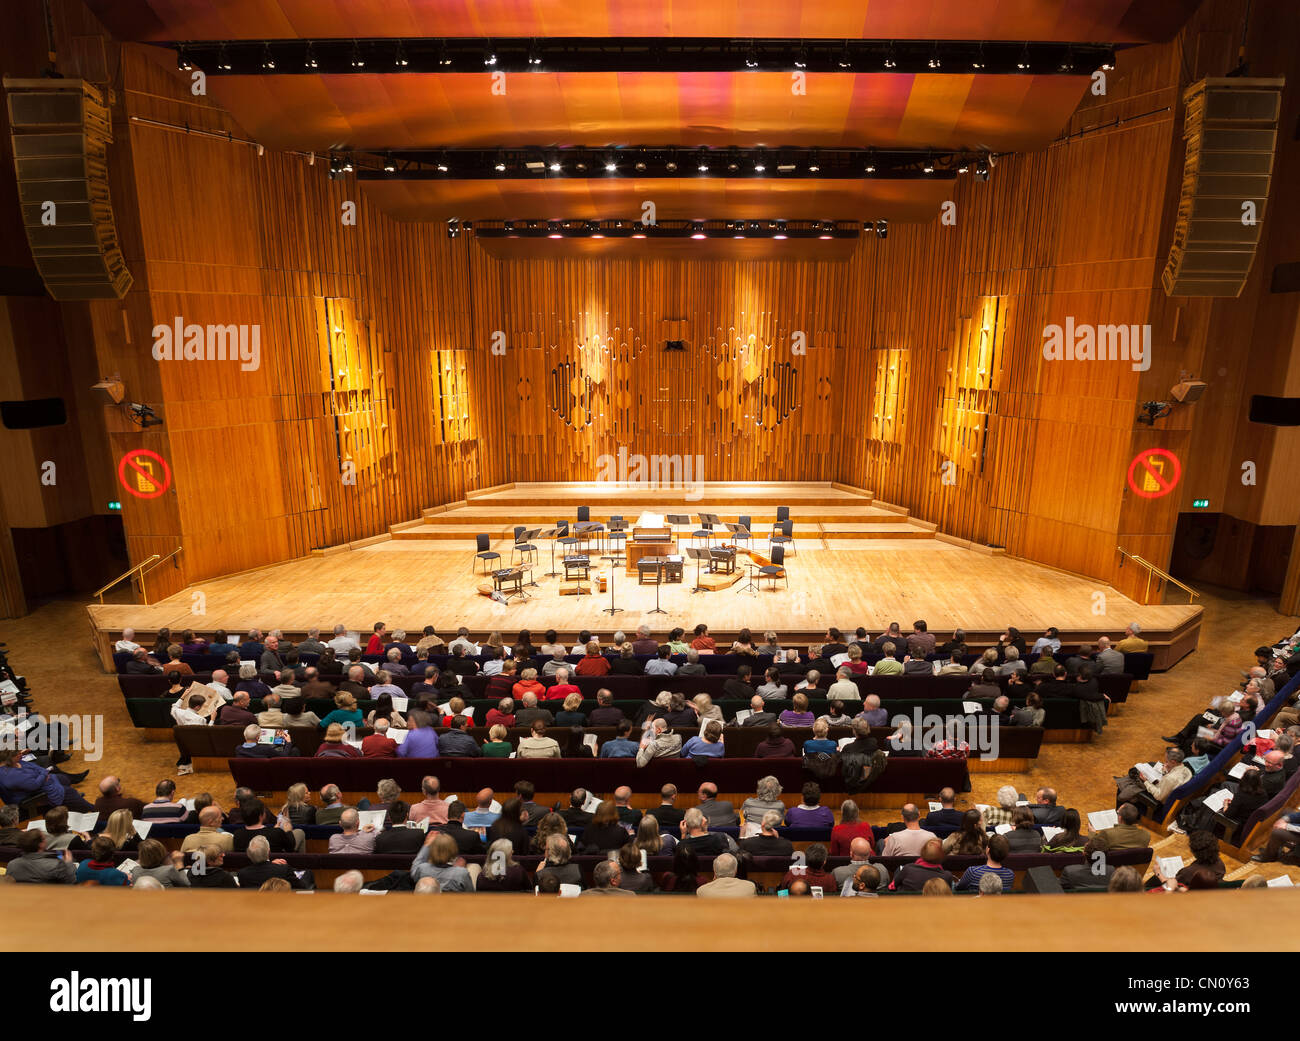 Etapa de música vacía el Centro Barbican Concert Hall Theatre Teatro Auditorio de Londres. Audiencia con los visitantes. Foto de stock